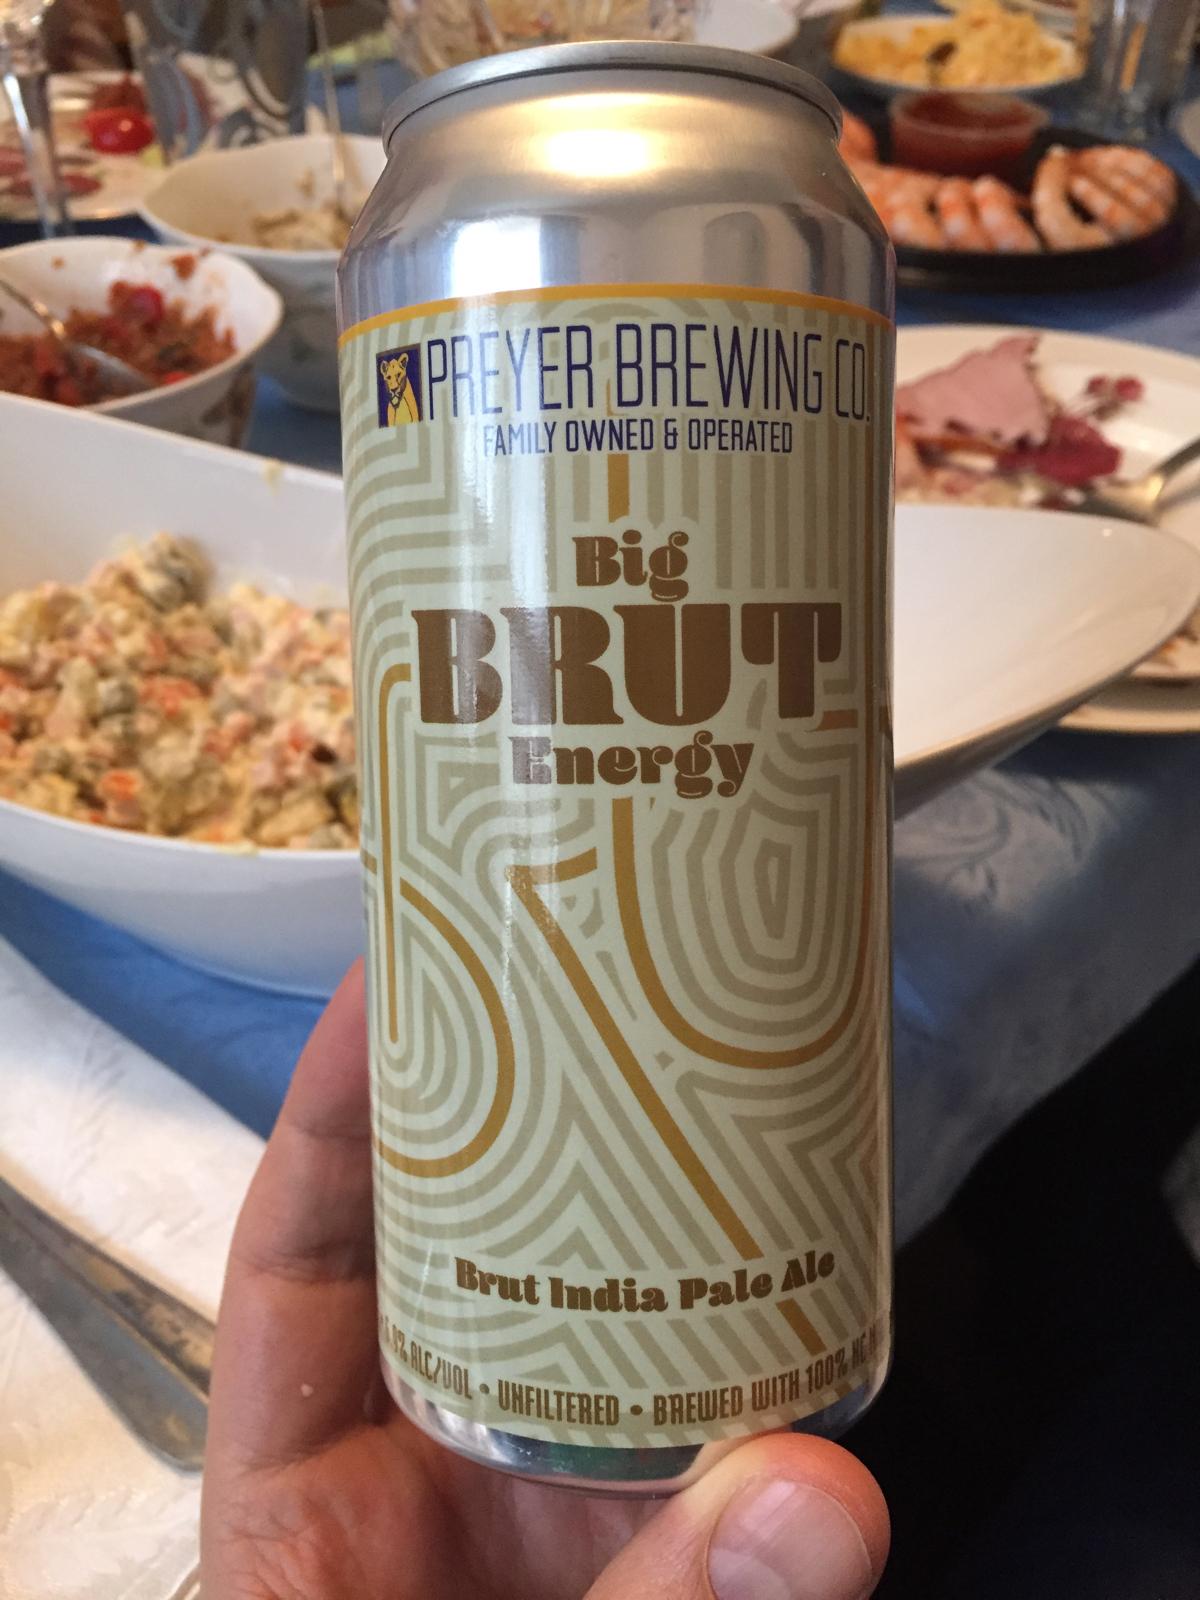 Big Brut Energy IPA